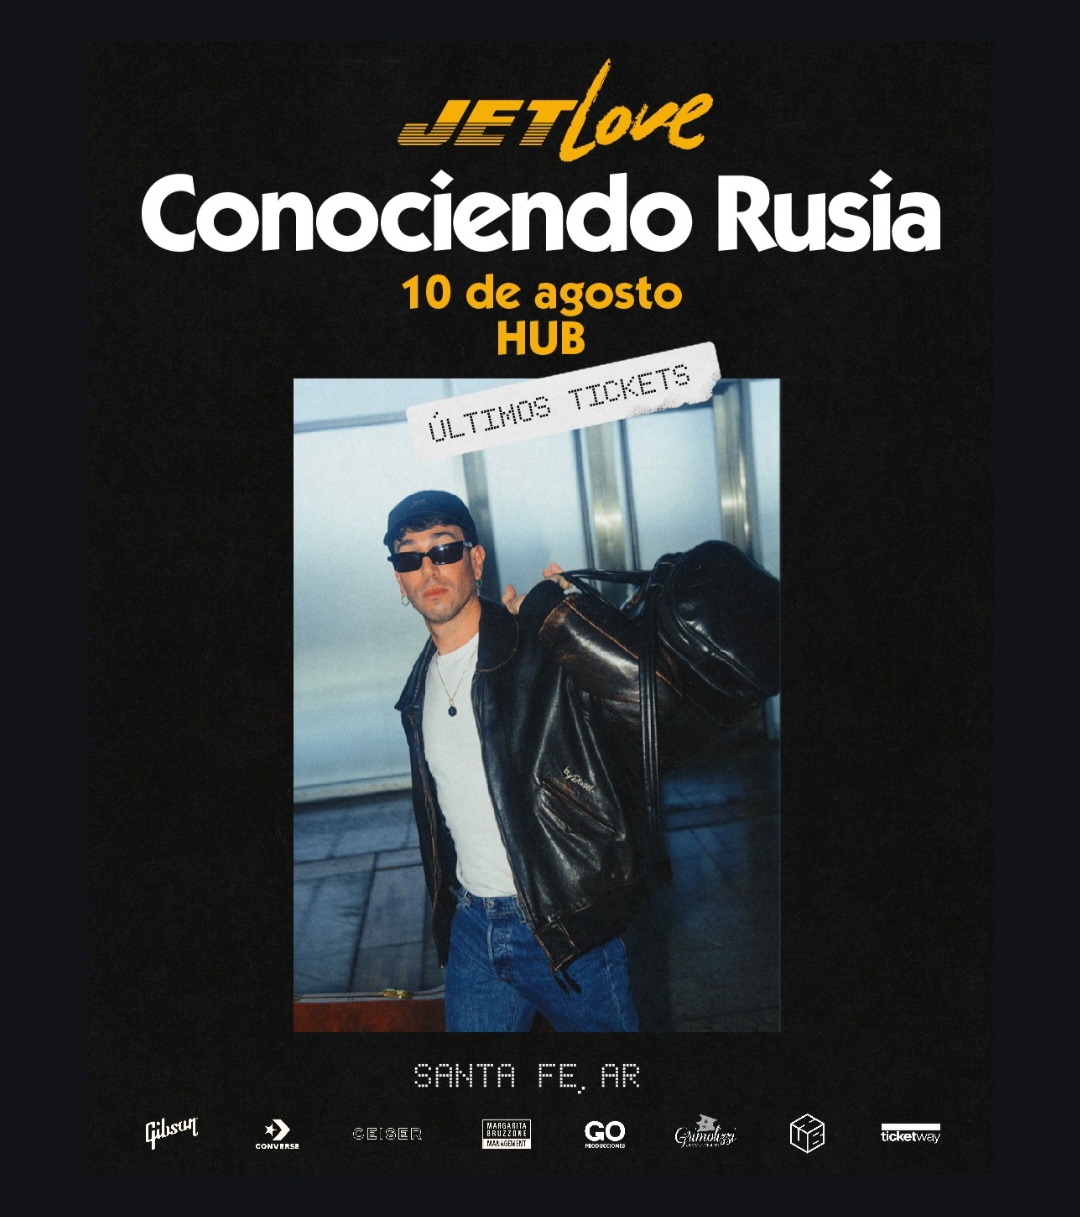 Conociendo Rusia: últimas entradas para su show en Santa Fe 